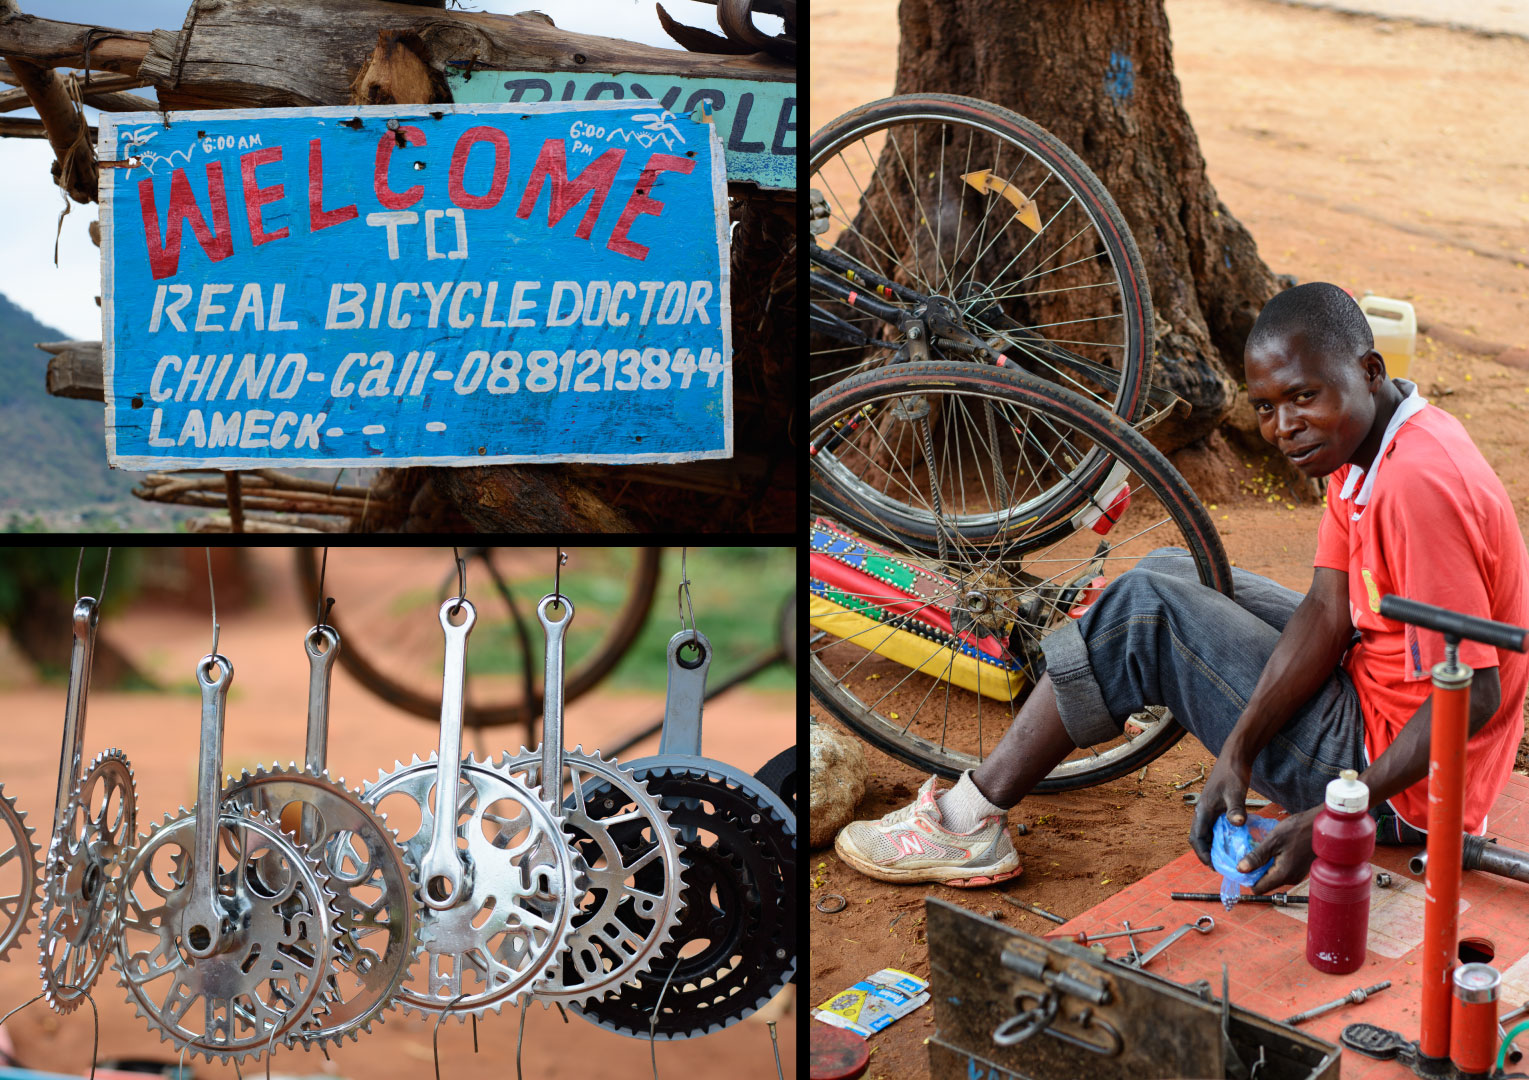 East-Africa-bicycle-repair-man.jpg